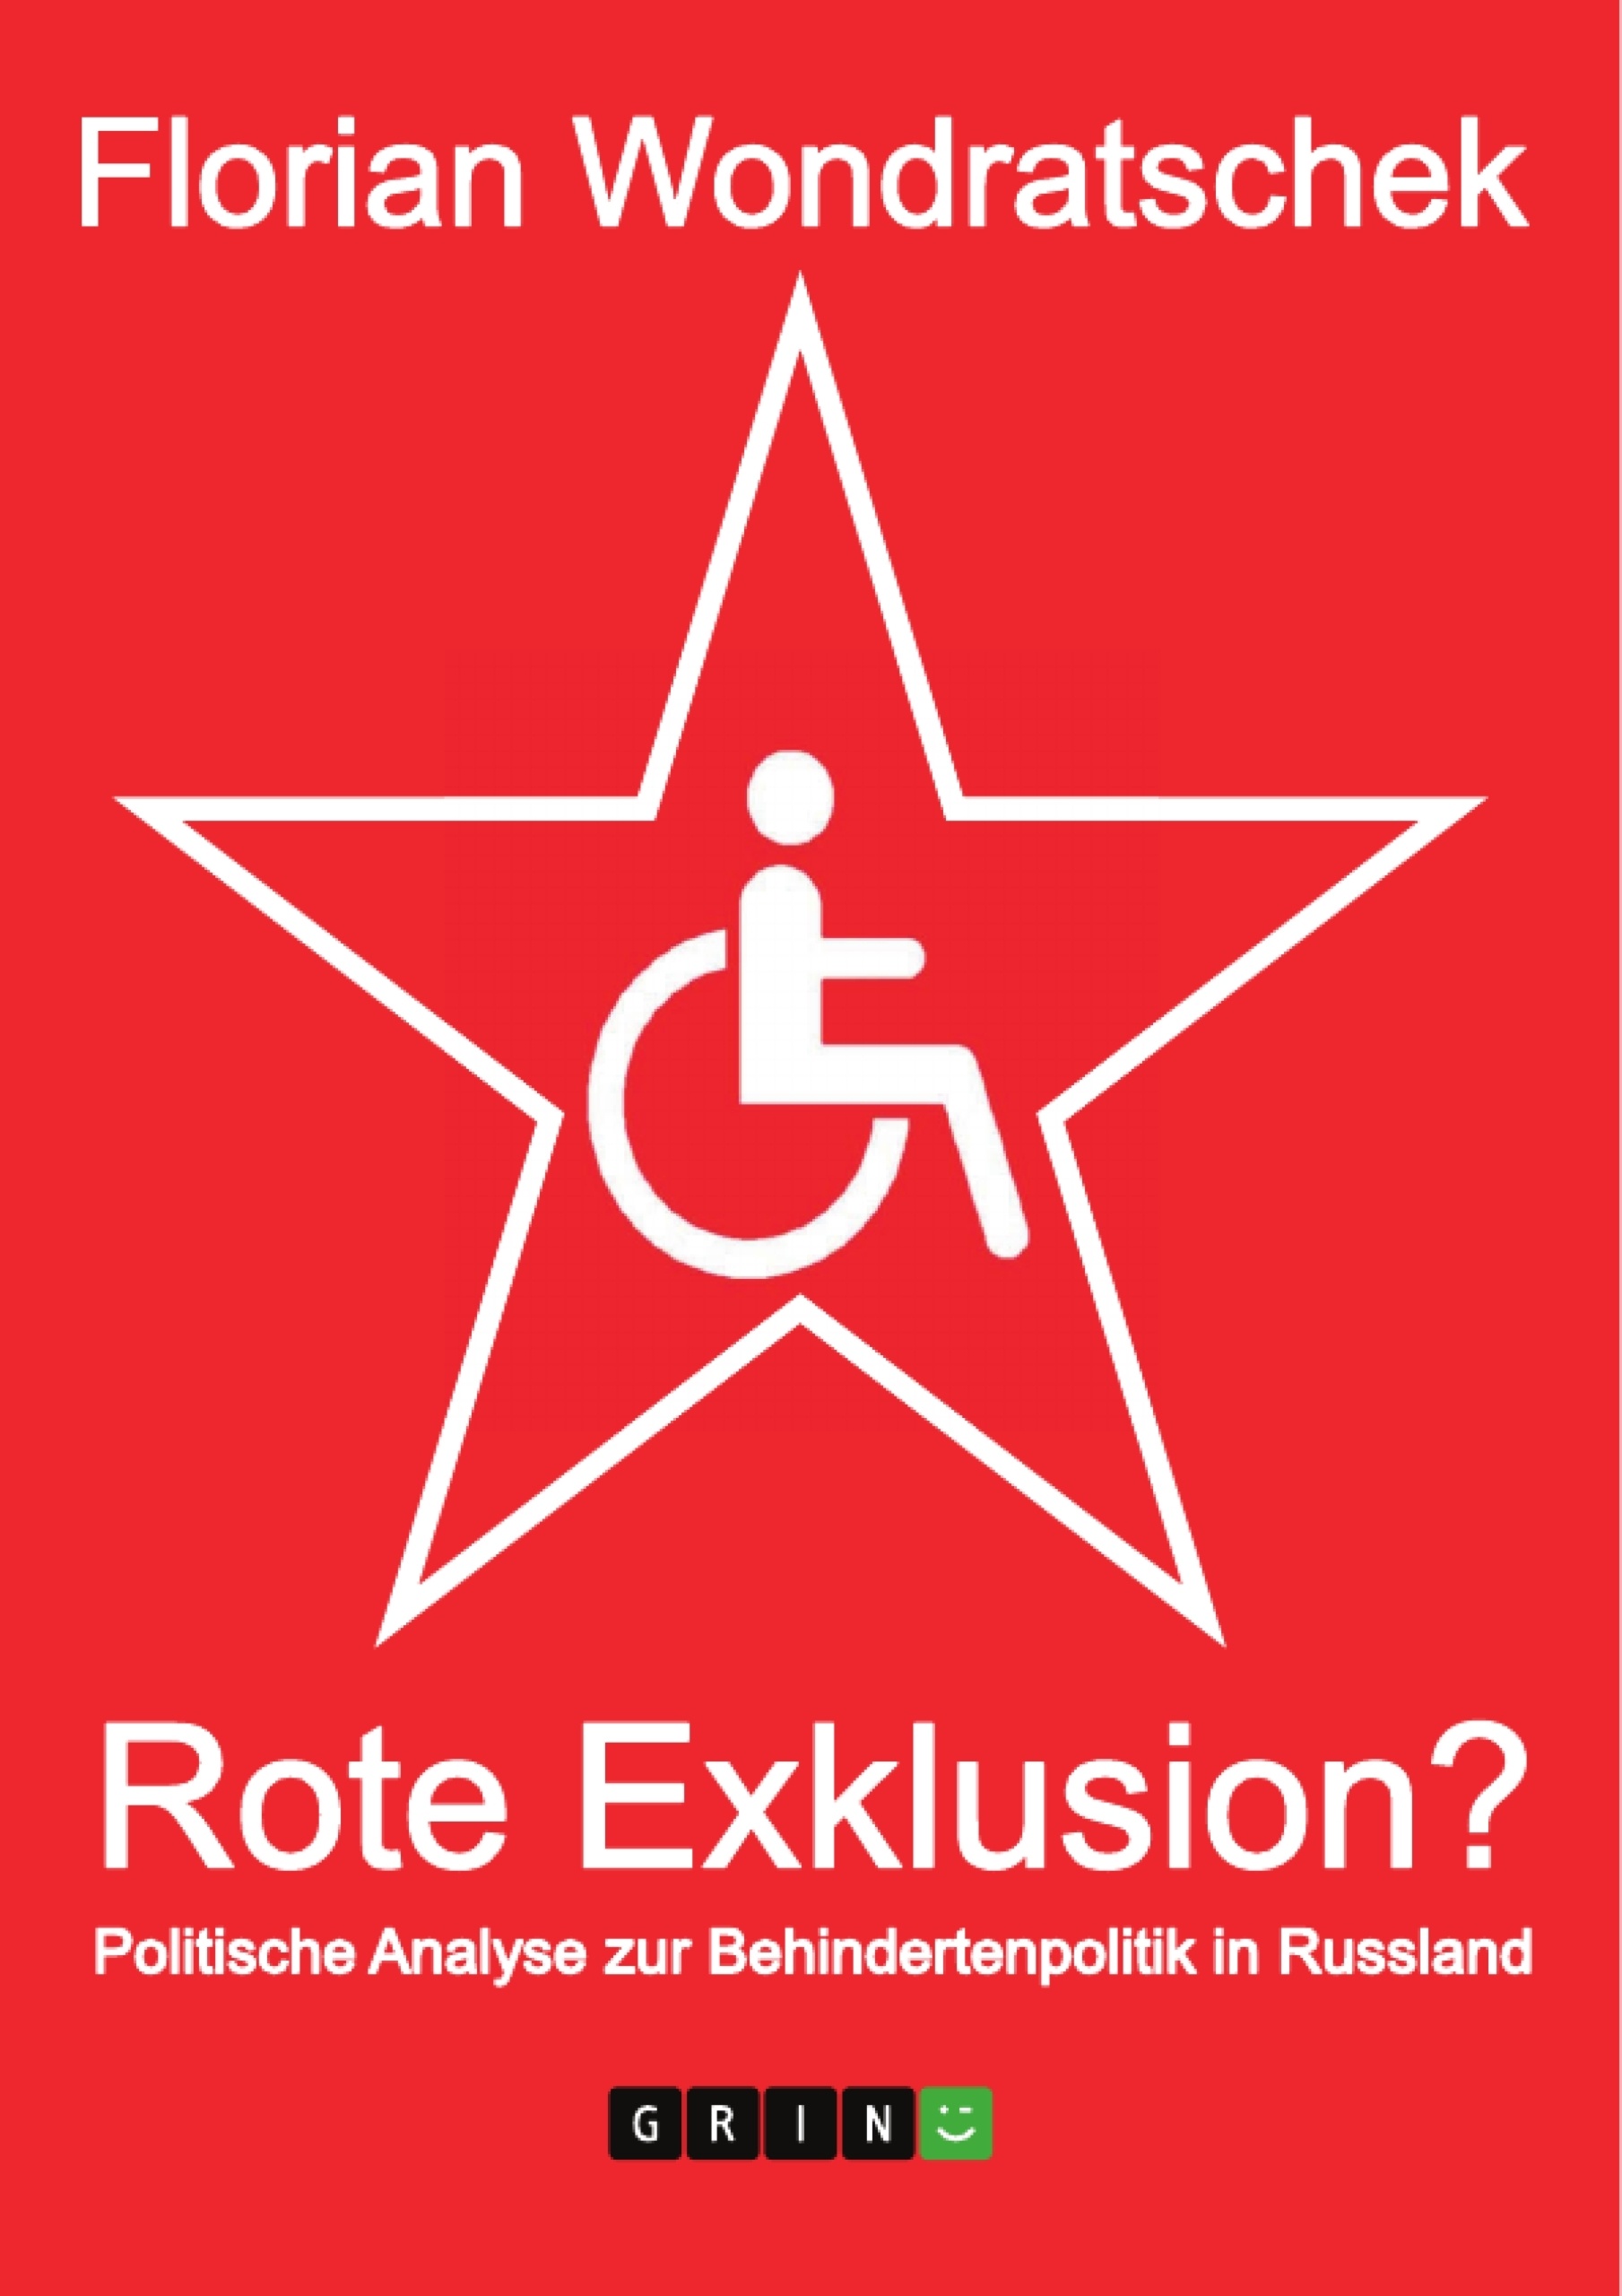 Titel: Rote Exklusion? Politische Analyse zur Behindertenpolitik in Russland